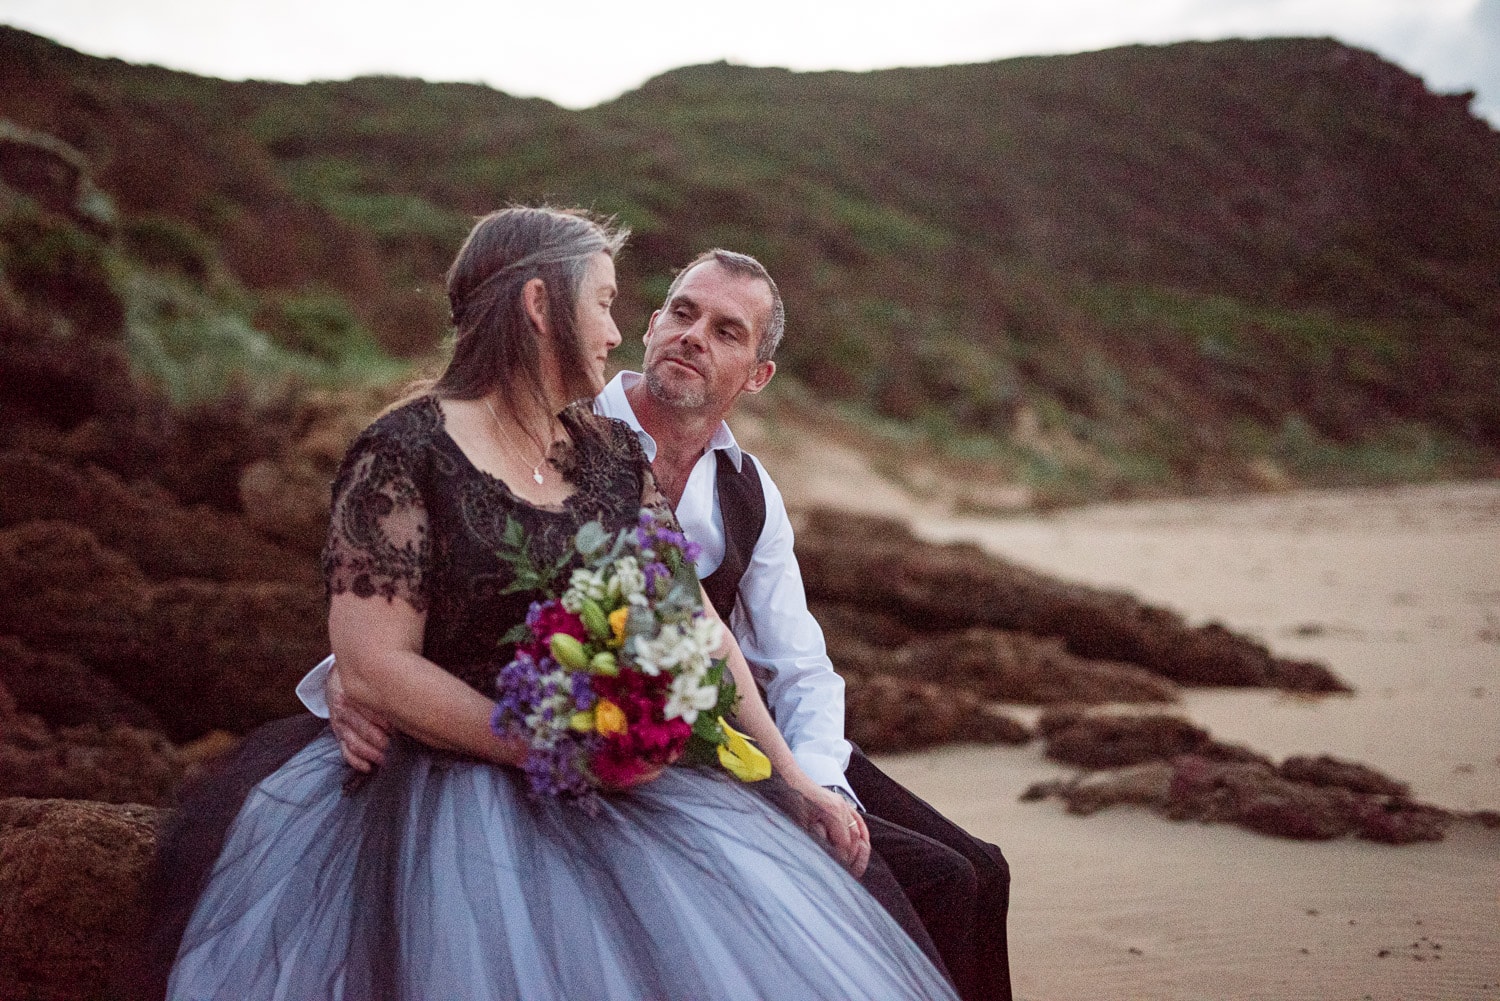 Otways coast wedding photographs